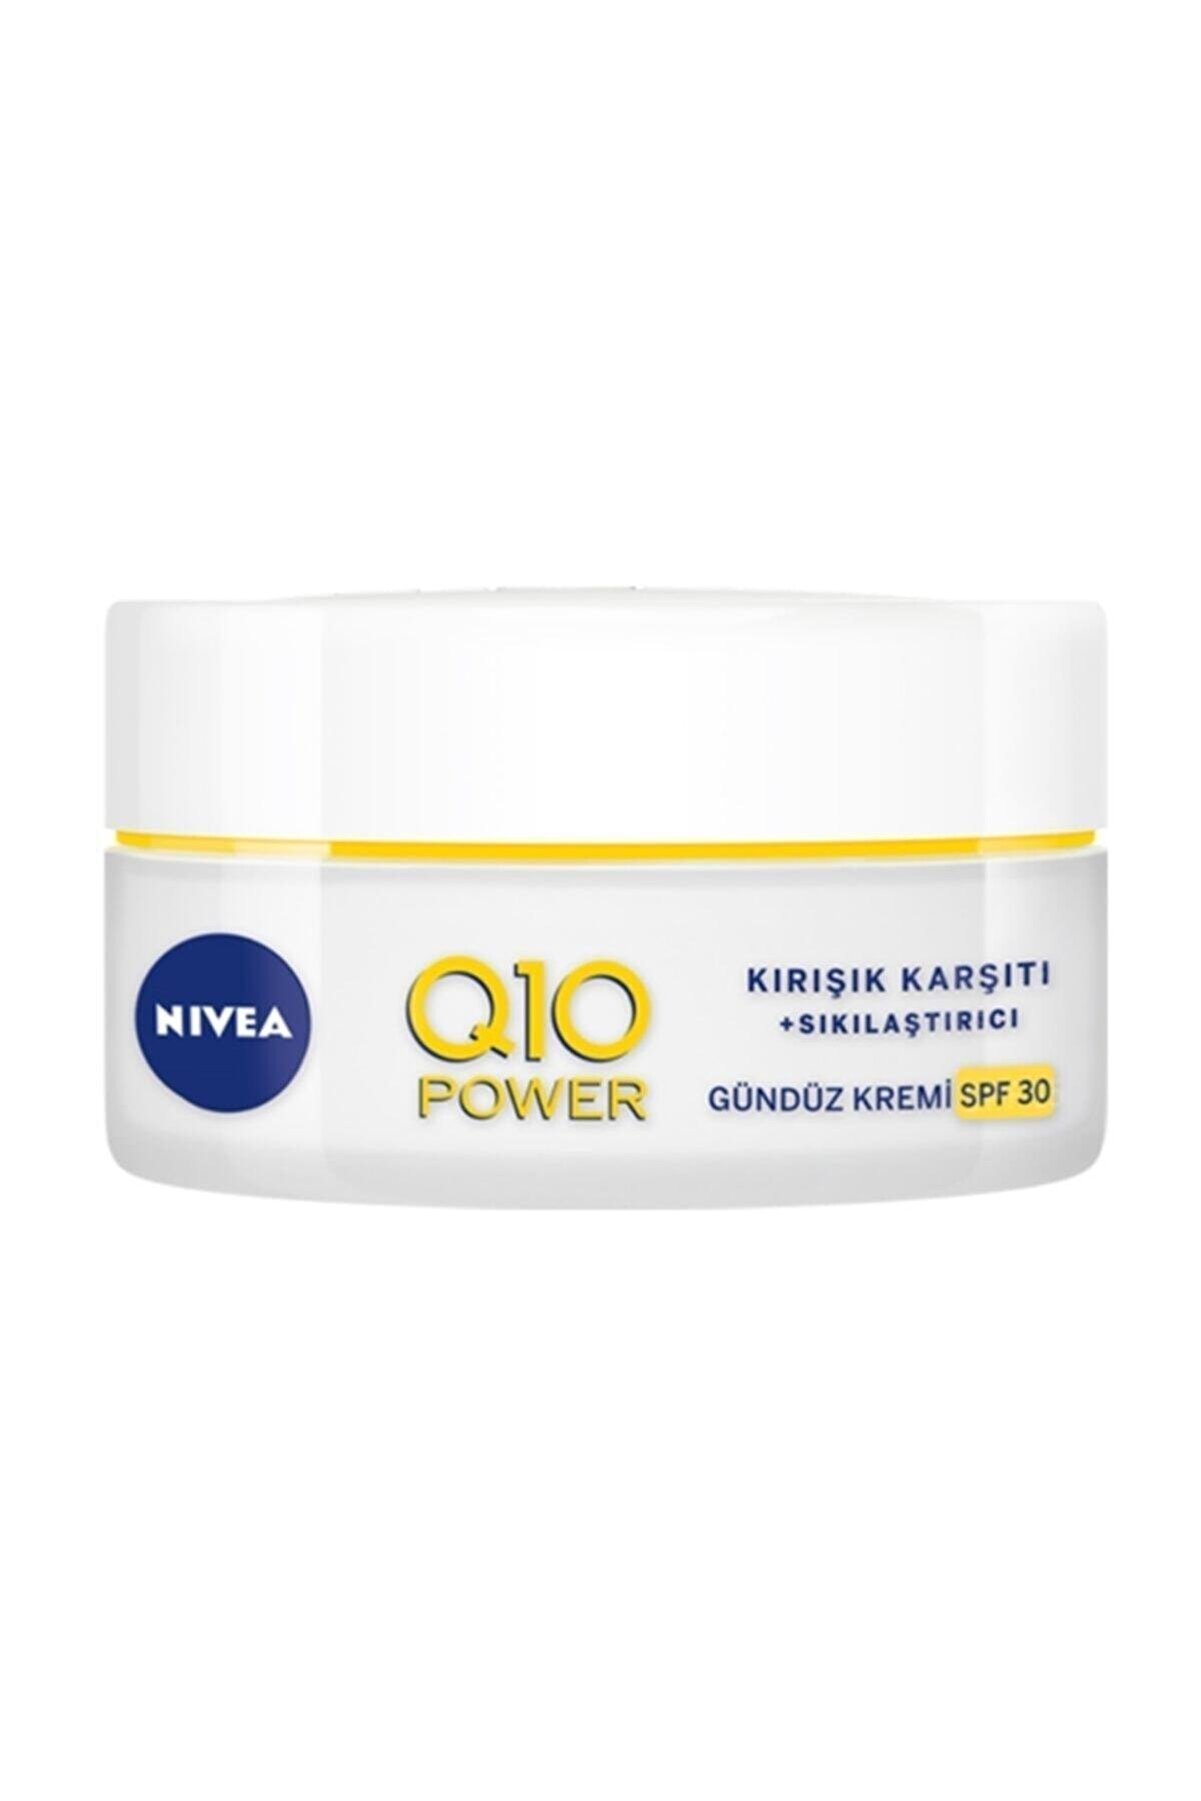 Nivea Q10 Anti-aging Kırışıklık Karşıtı Ve Leke Giderici Yüksek Güneş Korumalı Gündüz Kremi 50ml